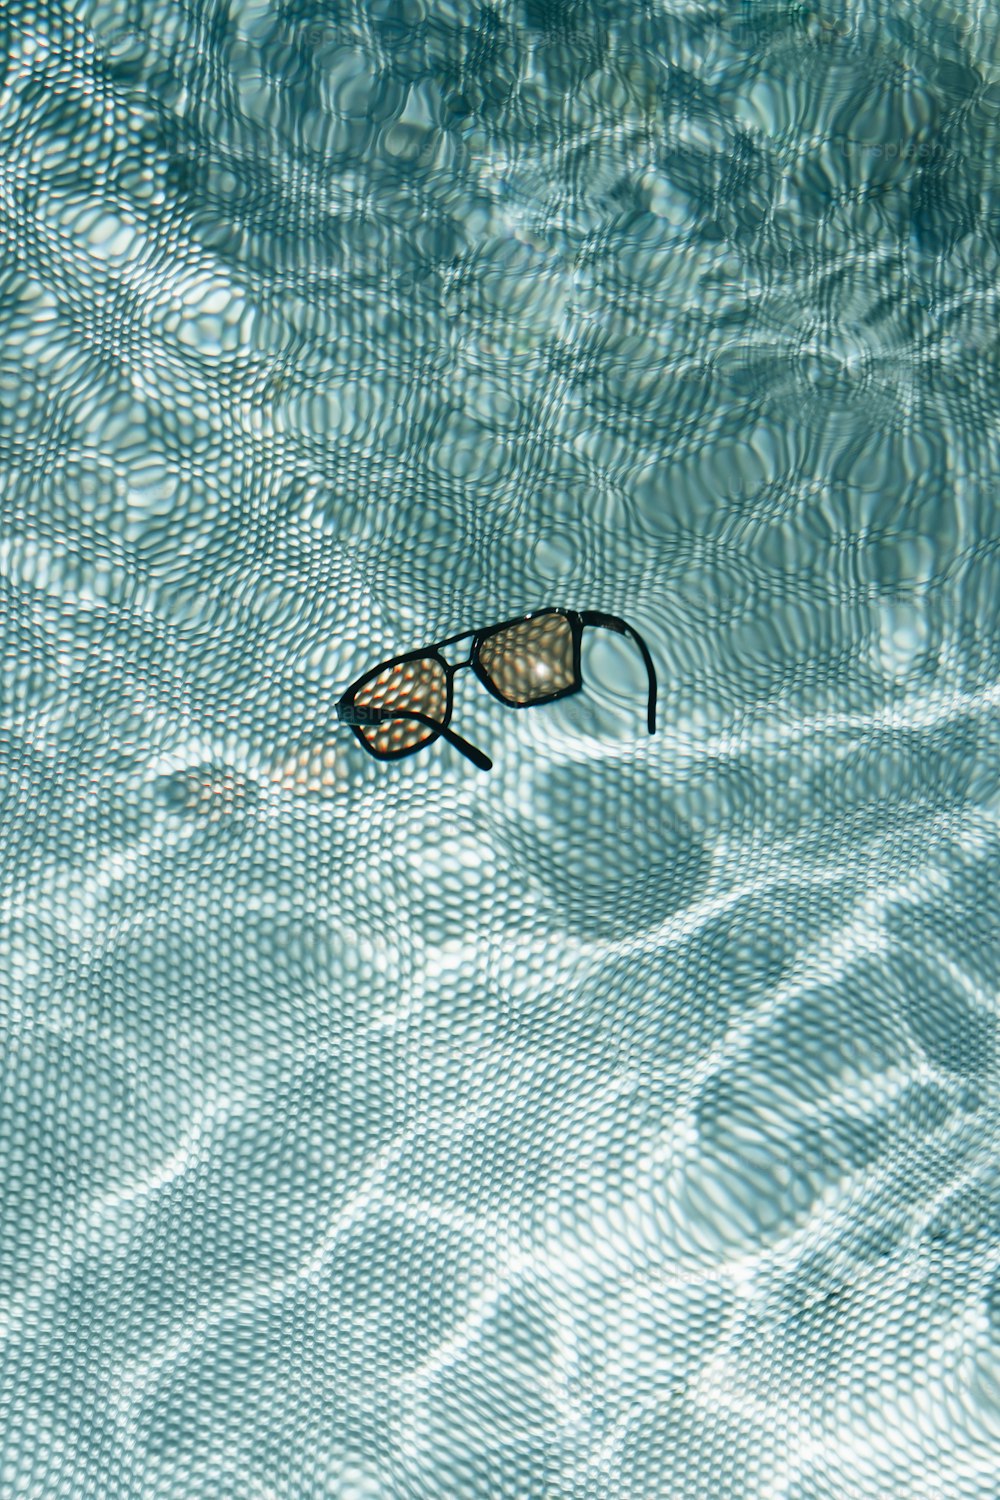 un paio di occhiali da nuoto che galleggiano in una piscina